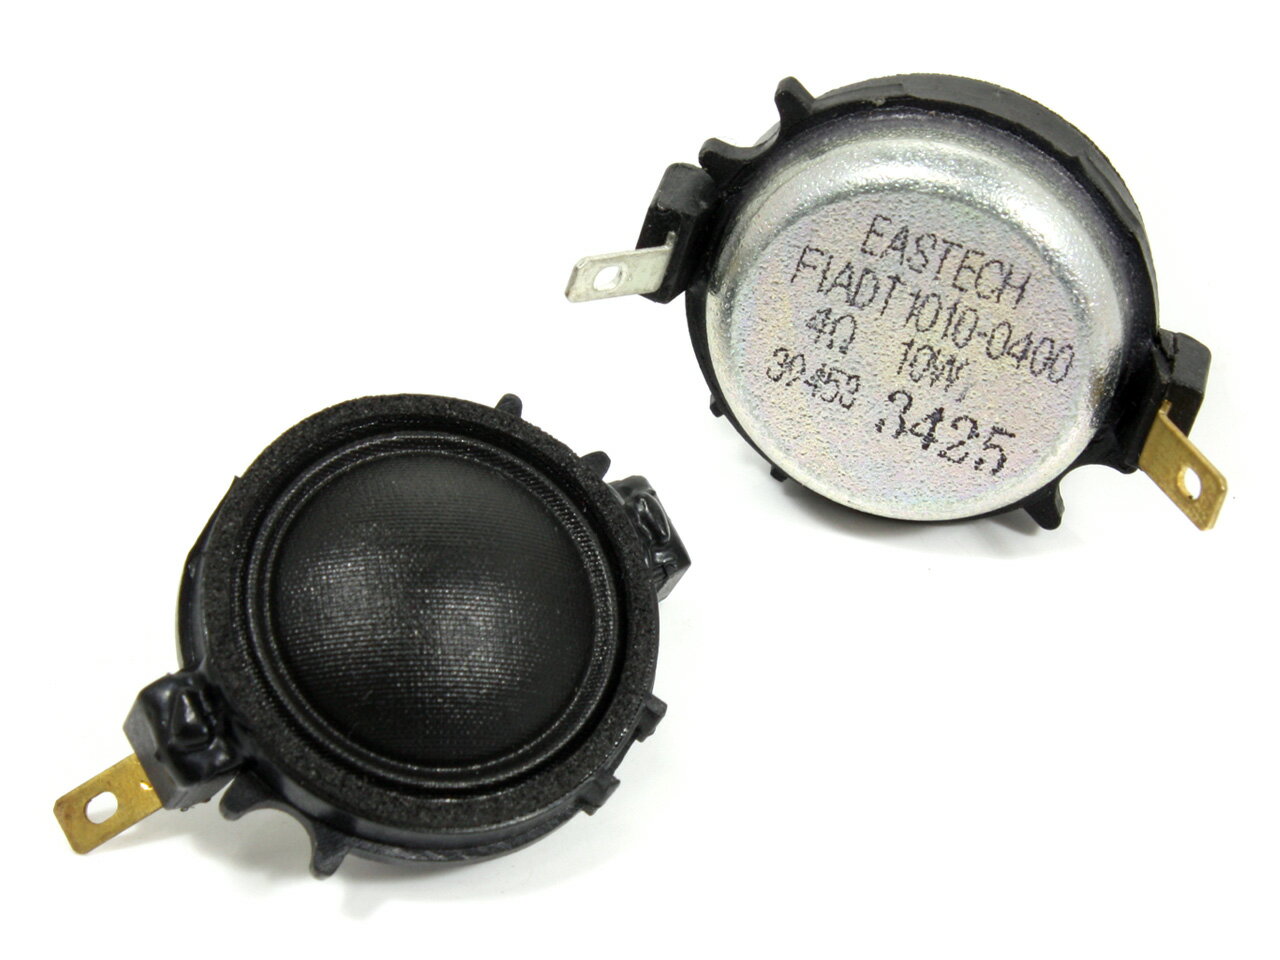 EASTEC FIADT1010-0400 シルクドームツイーターユニット0.8インチ(20mm) 4Ω/定格10W フェロフルード